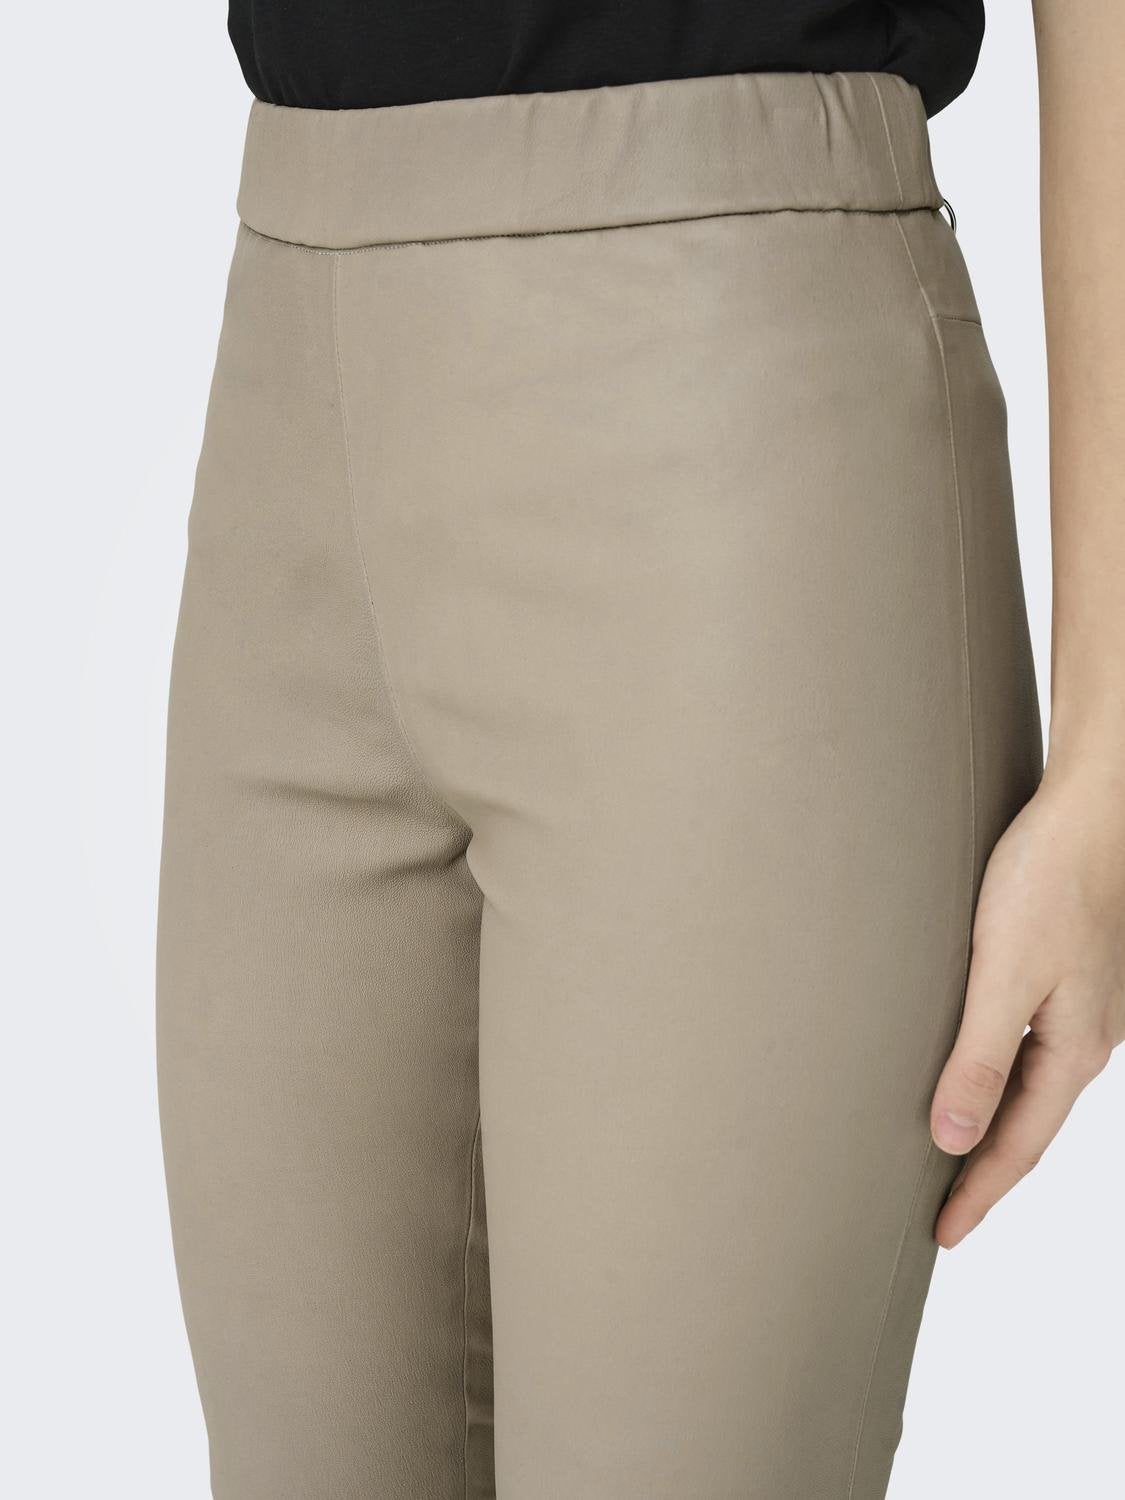 Gradiënt gebreide legging voor vrouw/volwassen gebreide broek/ombre legging/slim  fit gebreide broek/grijze houtskool wit/warme vrouw legging -  Nederland